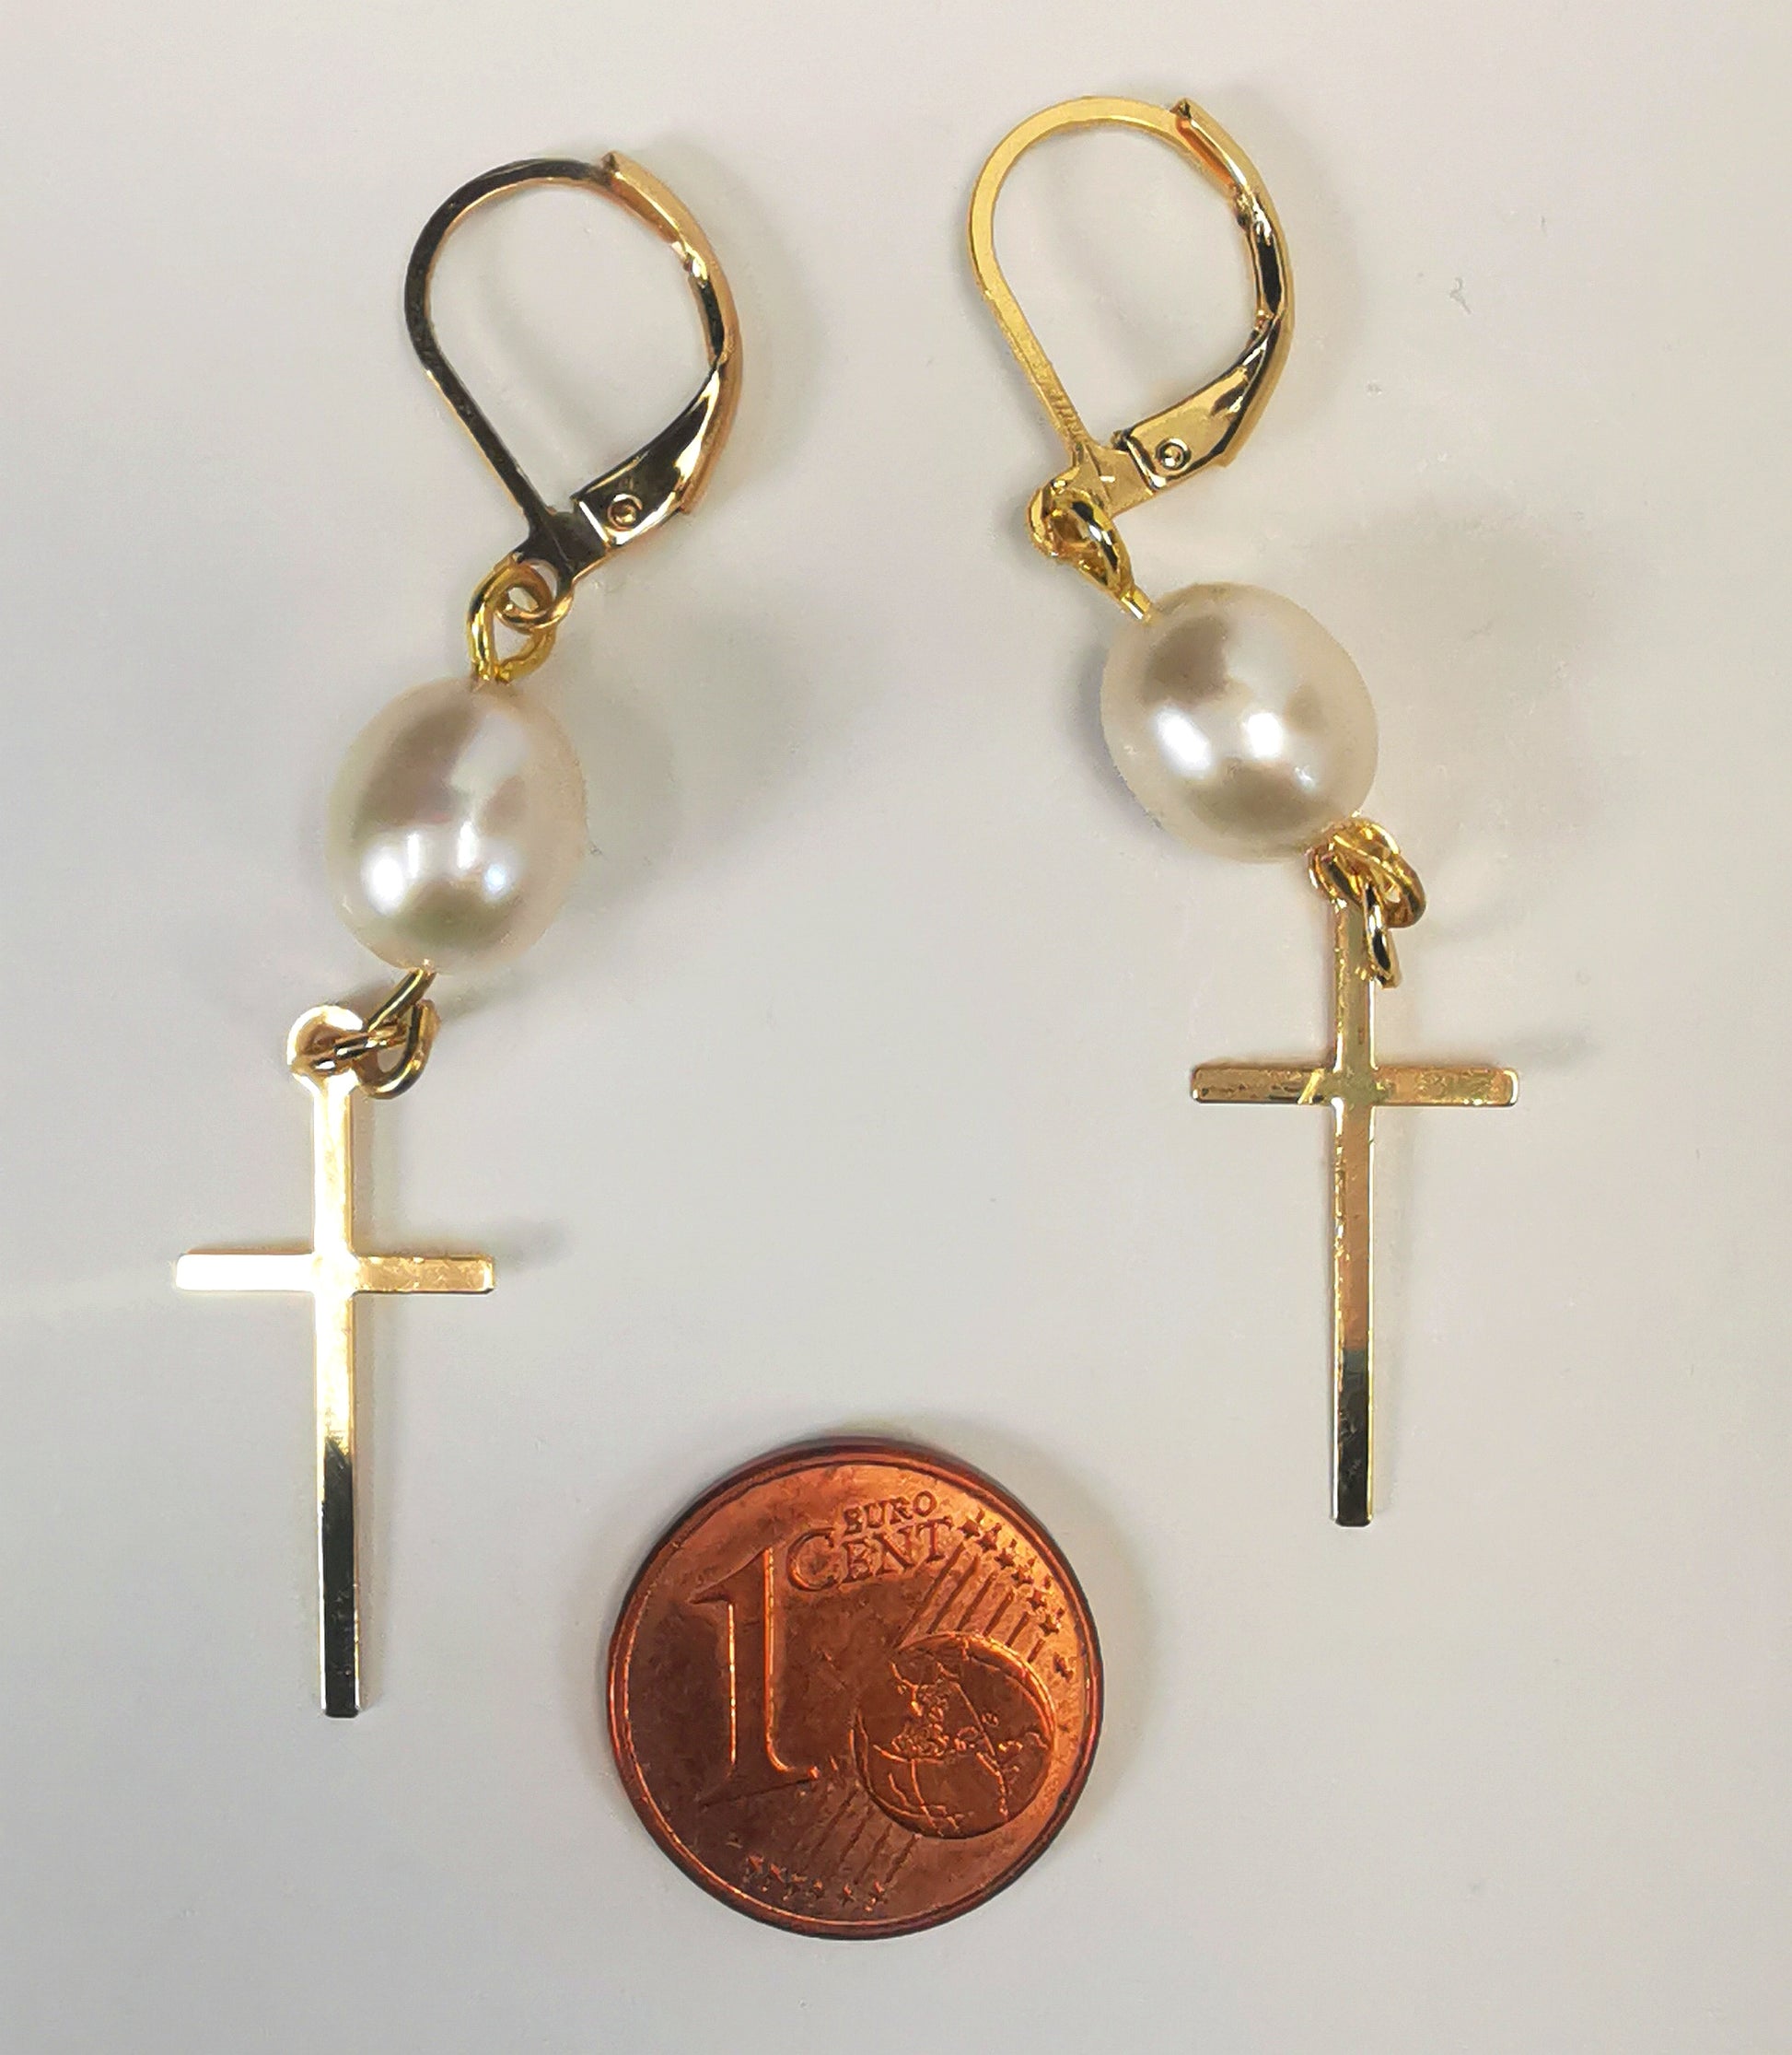 Boucles d'oreilles perles de culture ovale 7-9mm blanche s, accrochées sous dormeuses plaquées or. Sous la perle est suspendue une croix plaquée or de 22x10mm. Présentées posées cote à cote, au dessus d'une pièce de 1 centime, sur un fond blanc. Vue de dessus.